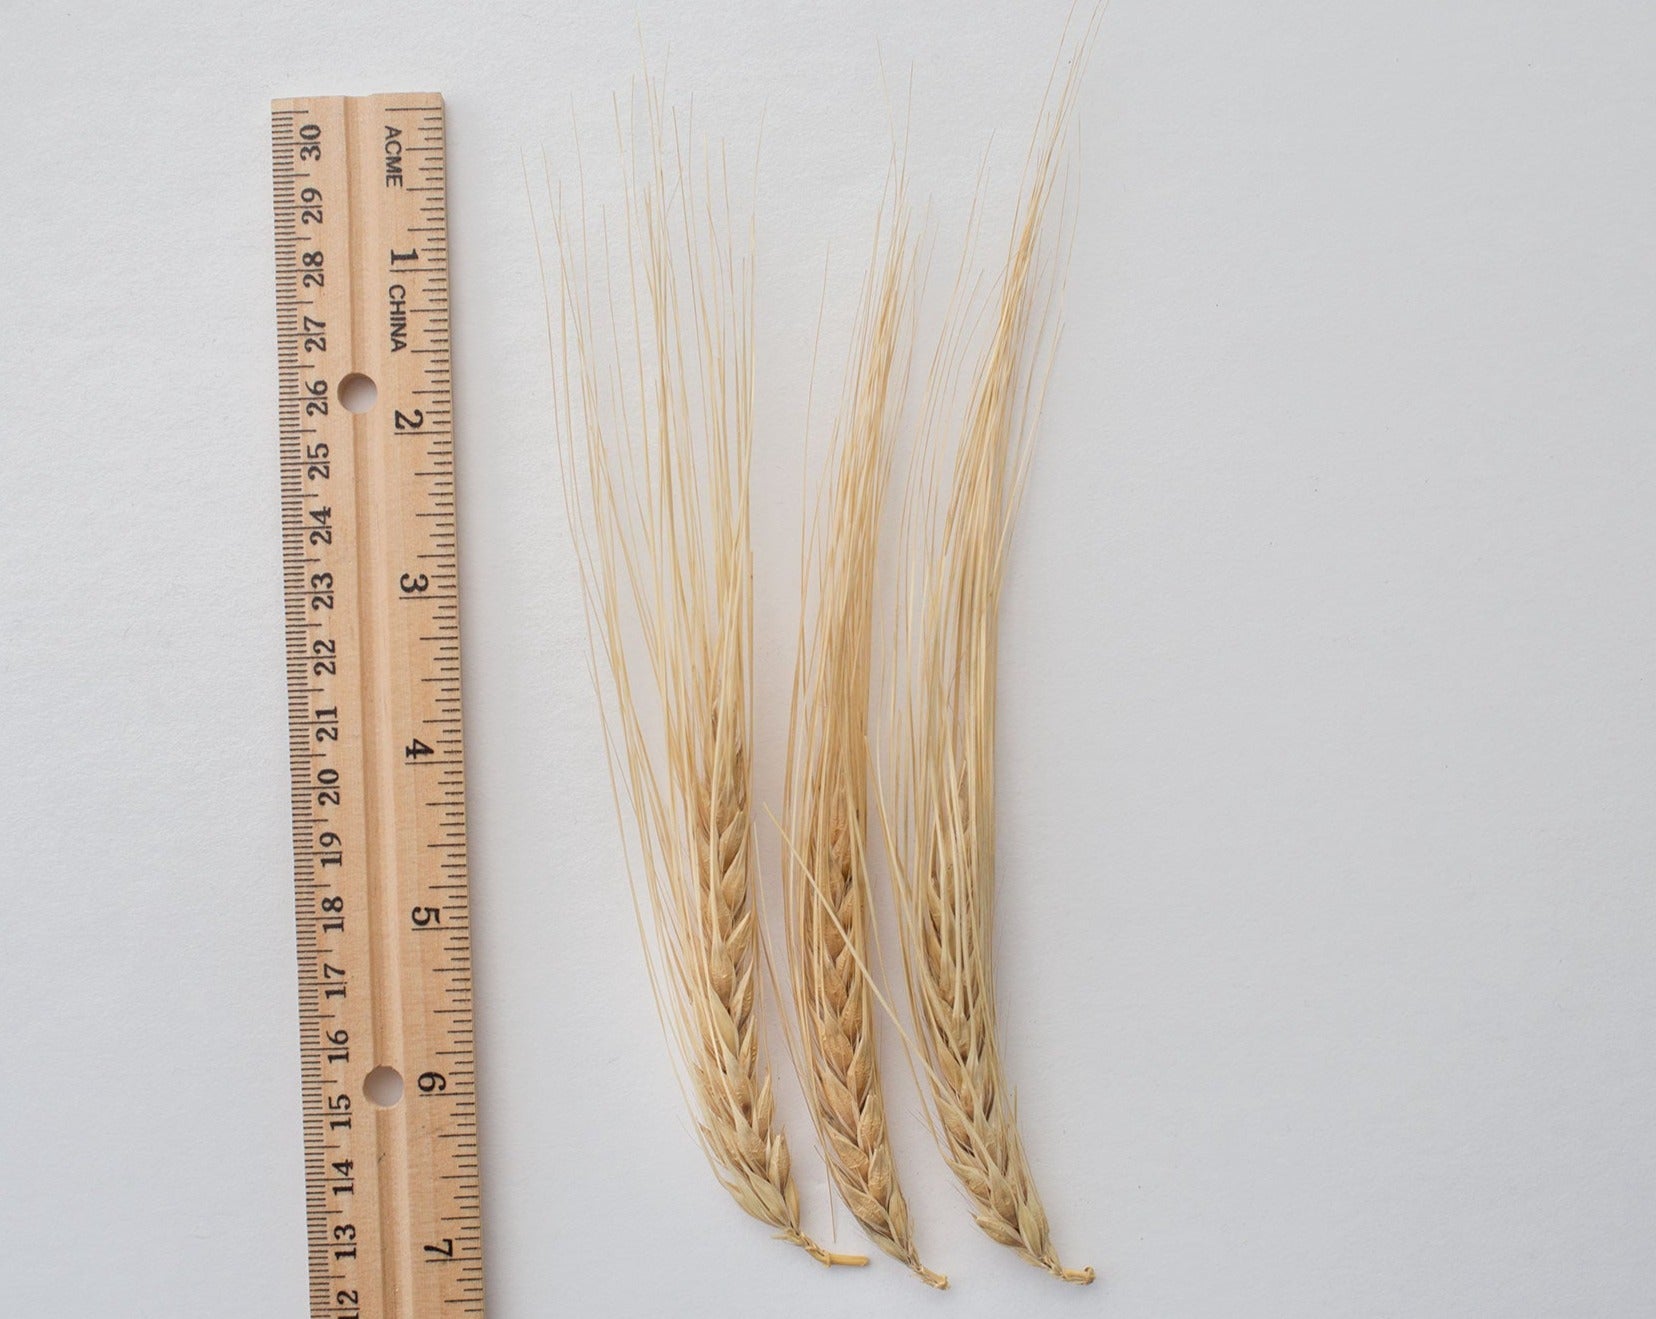 Barley (Hulled) - Peru Cebada